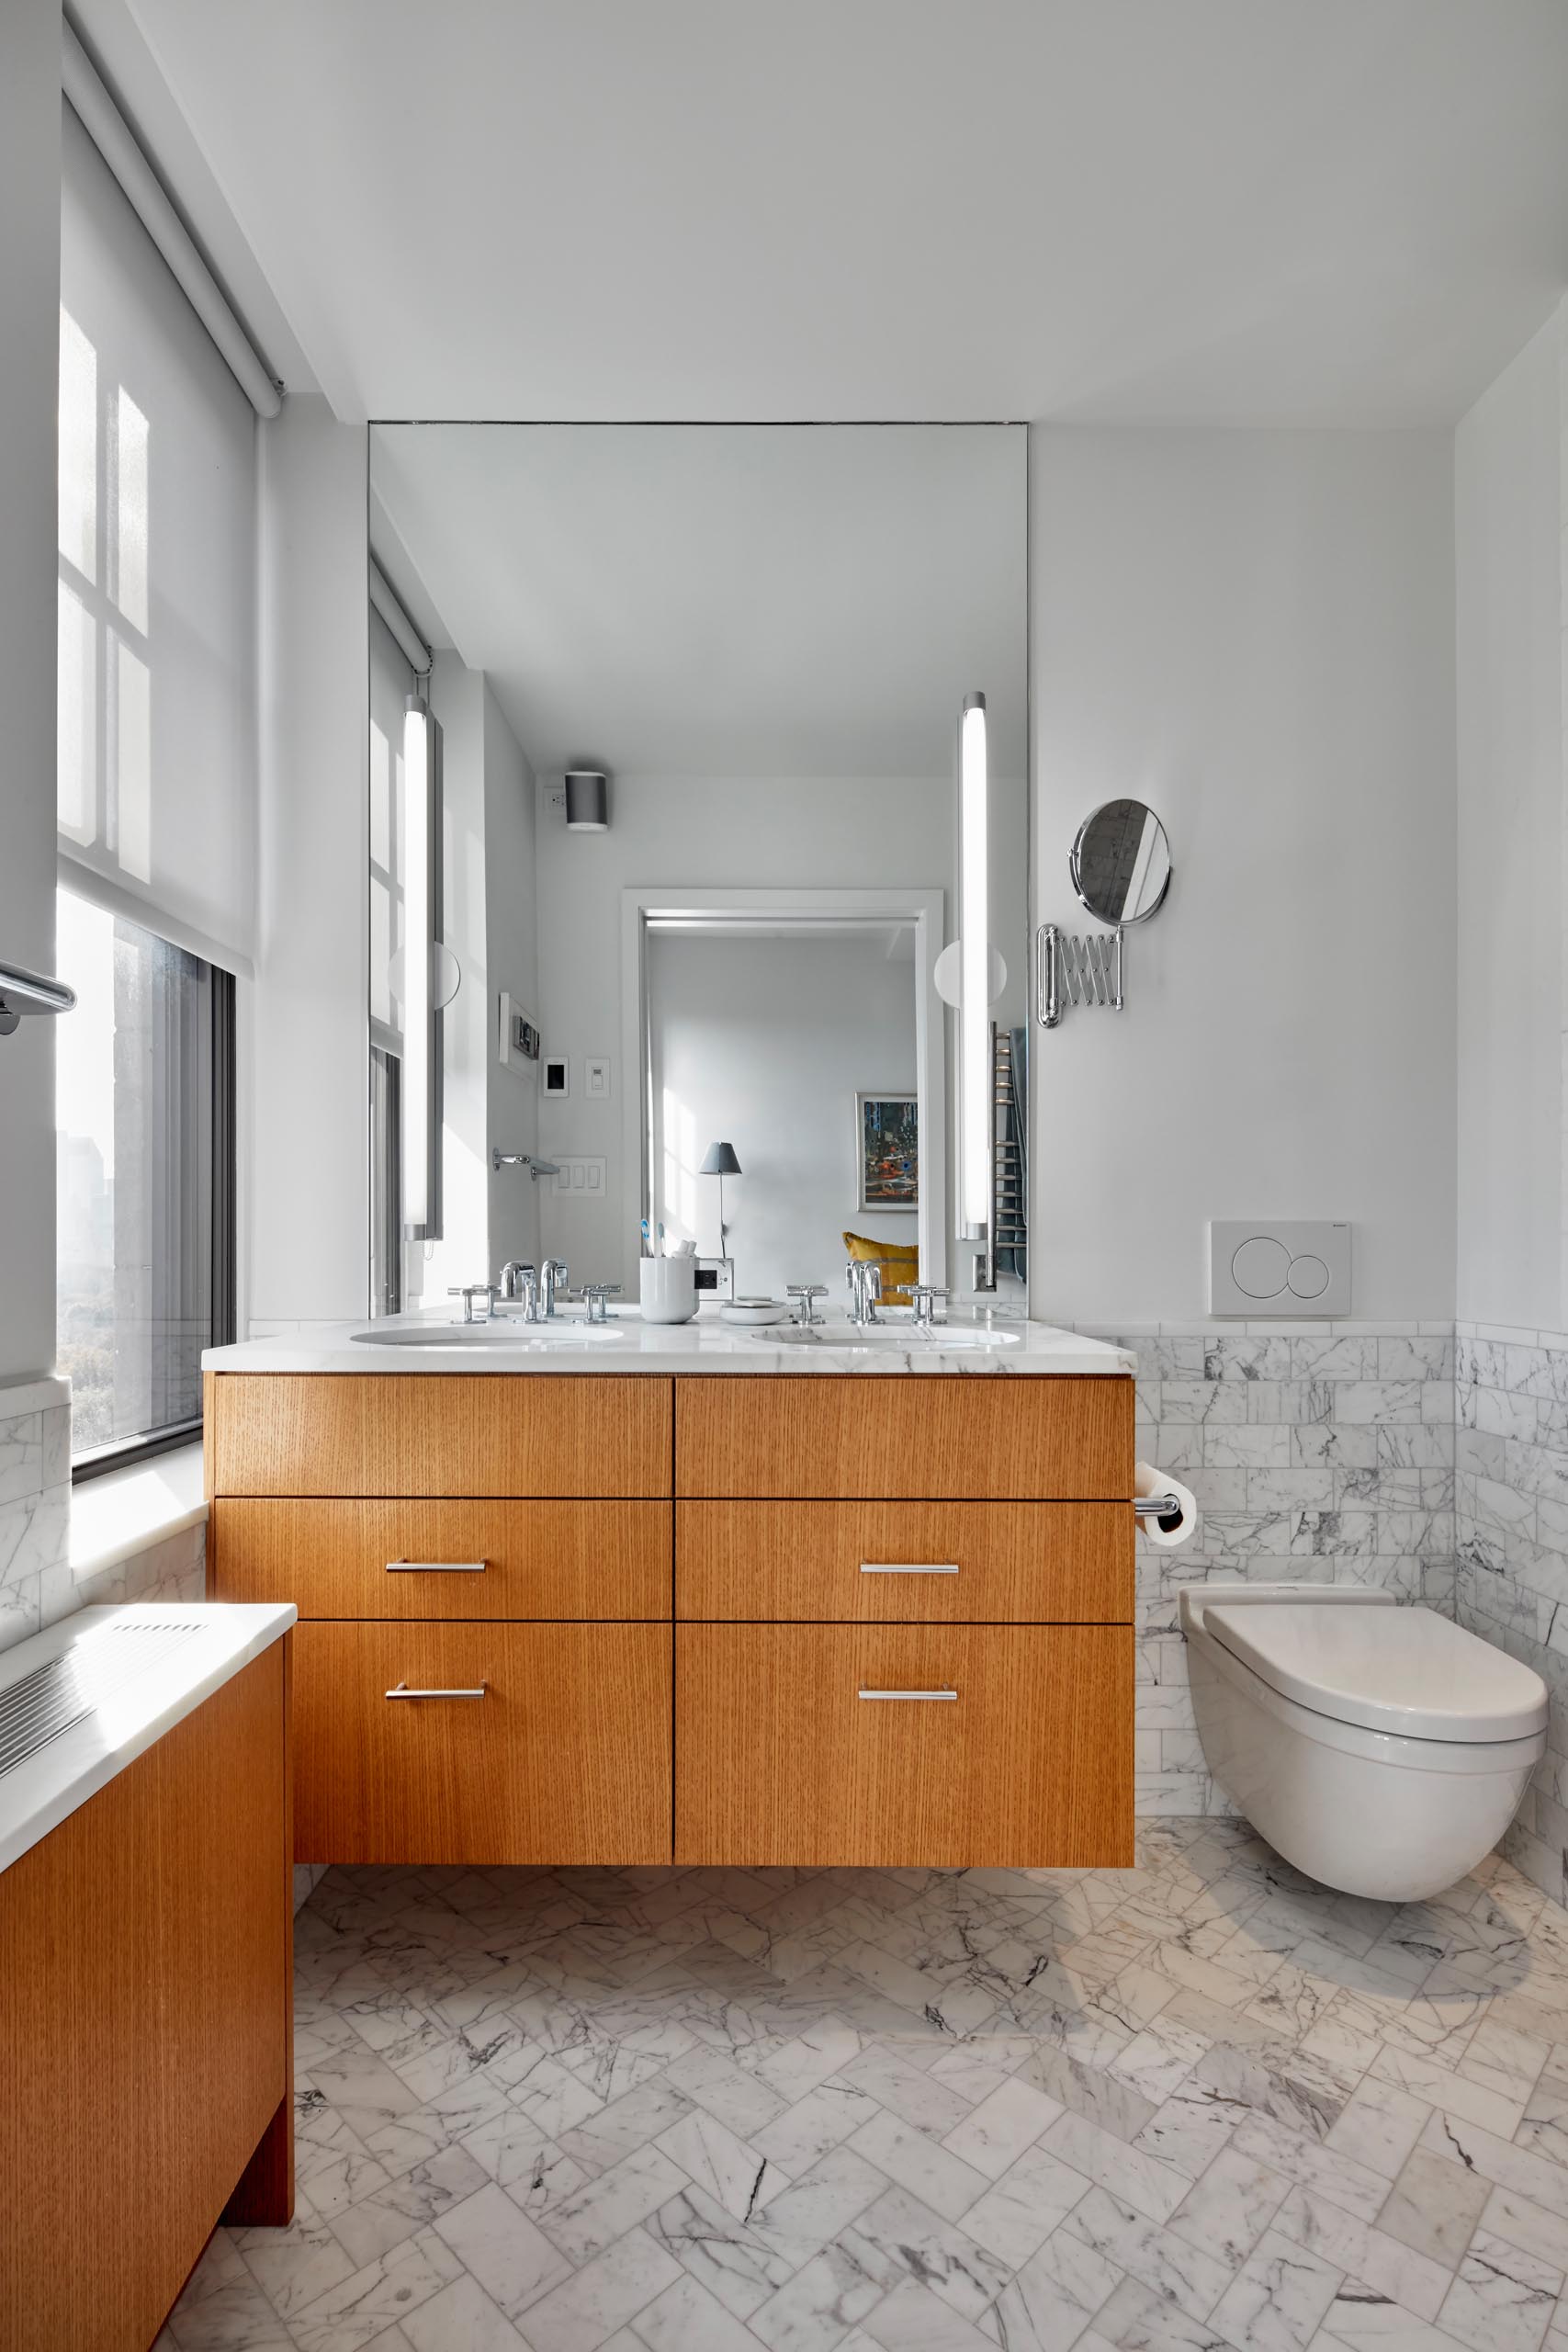 Современная ванная комната с деревянным умывальником, крышкой радиатора и мраморной плиткой.